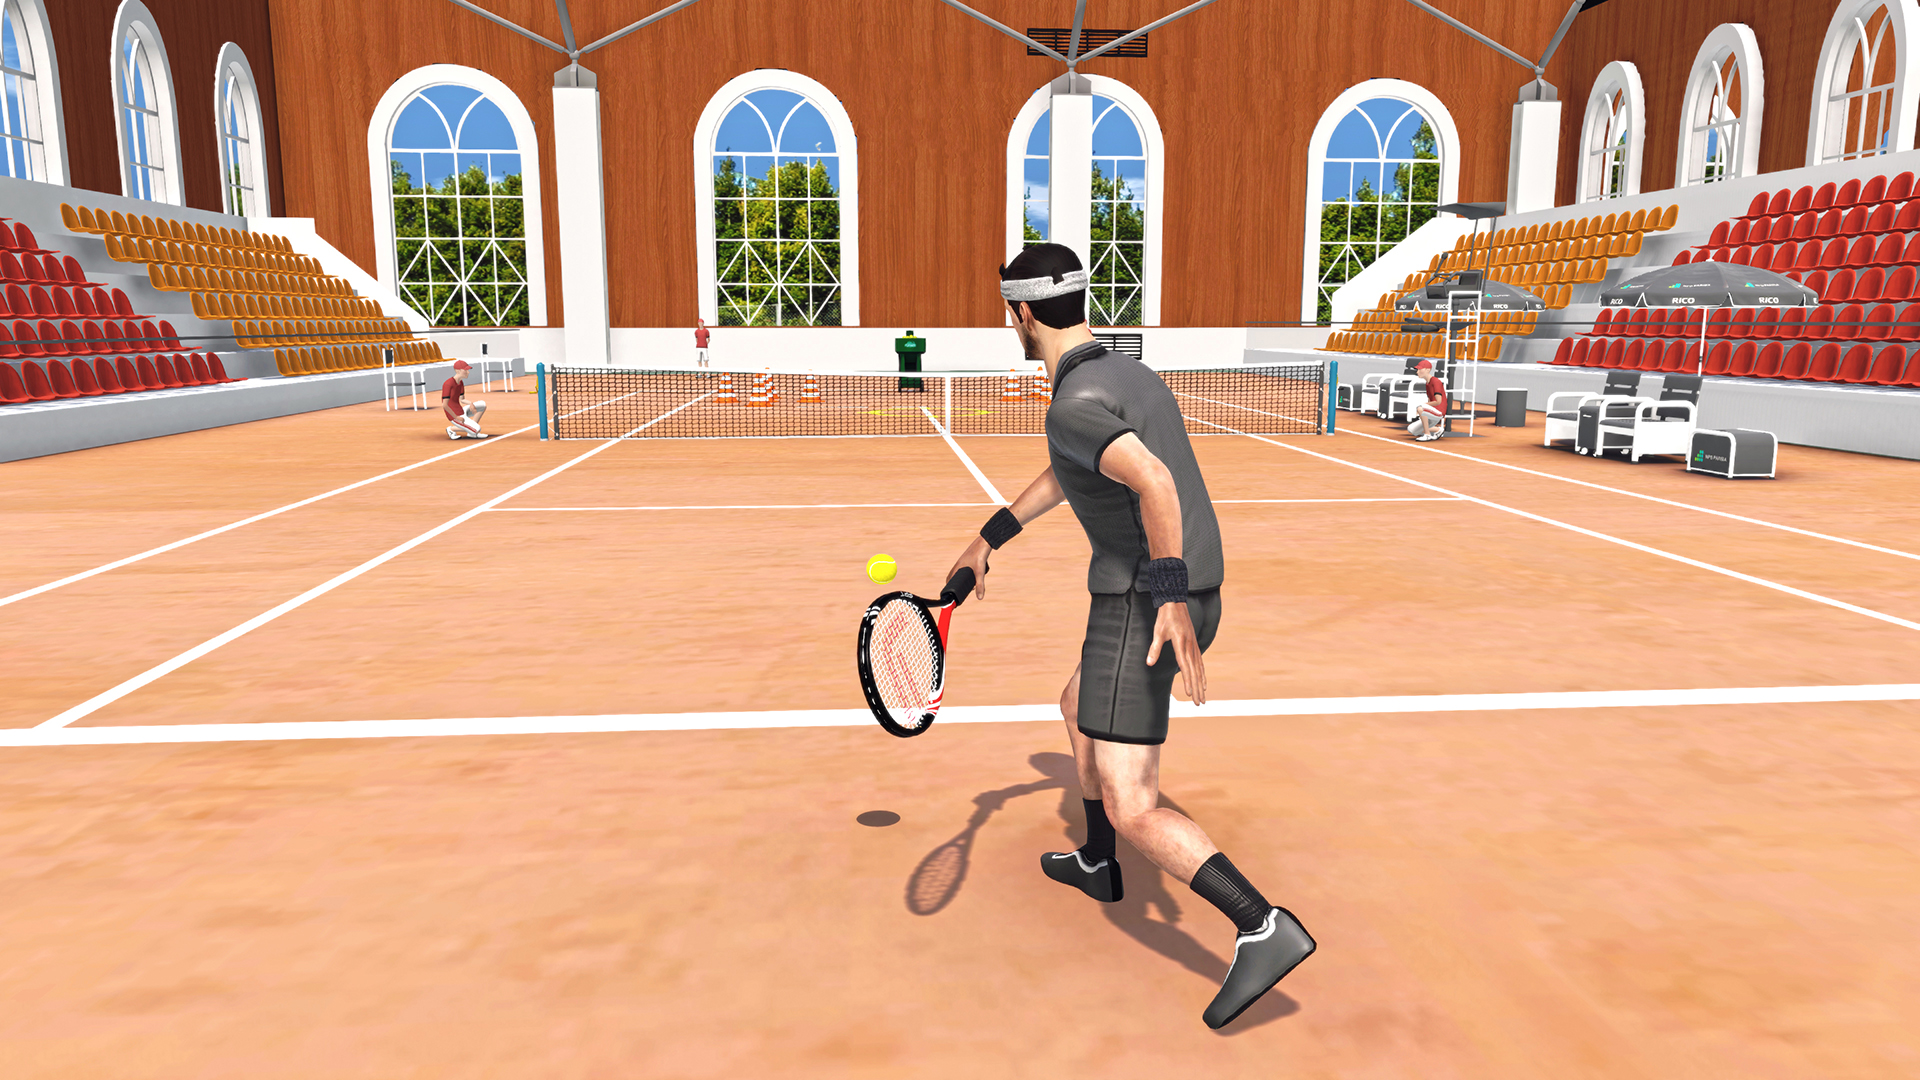 Включи игры теннис. First person Tennis VR. First person Tennis - the real Tennis Simulator. Первый симулятор игры в теннис. Теннисисты в компьютерной игре.